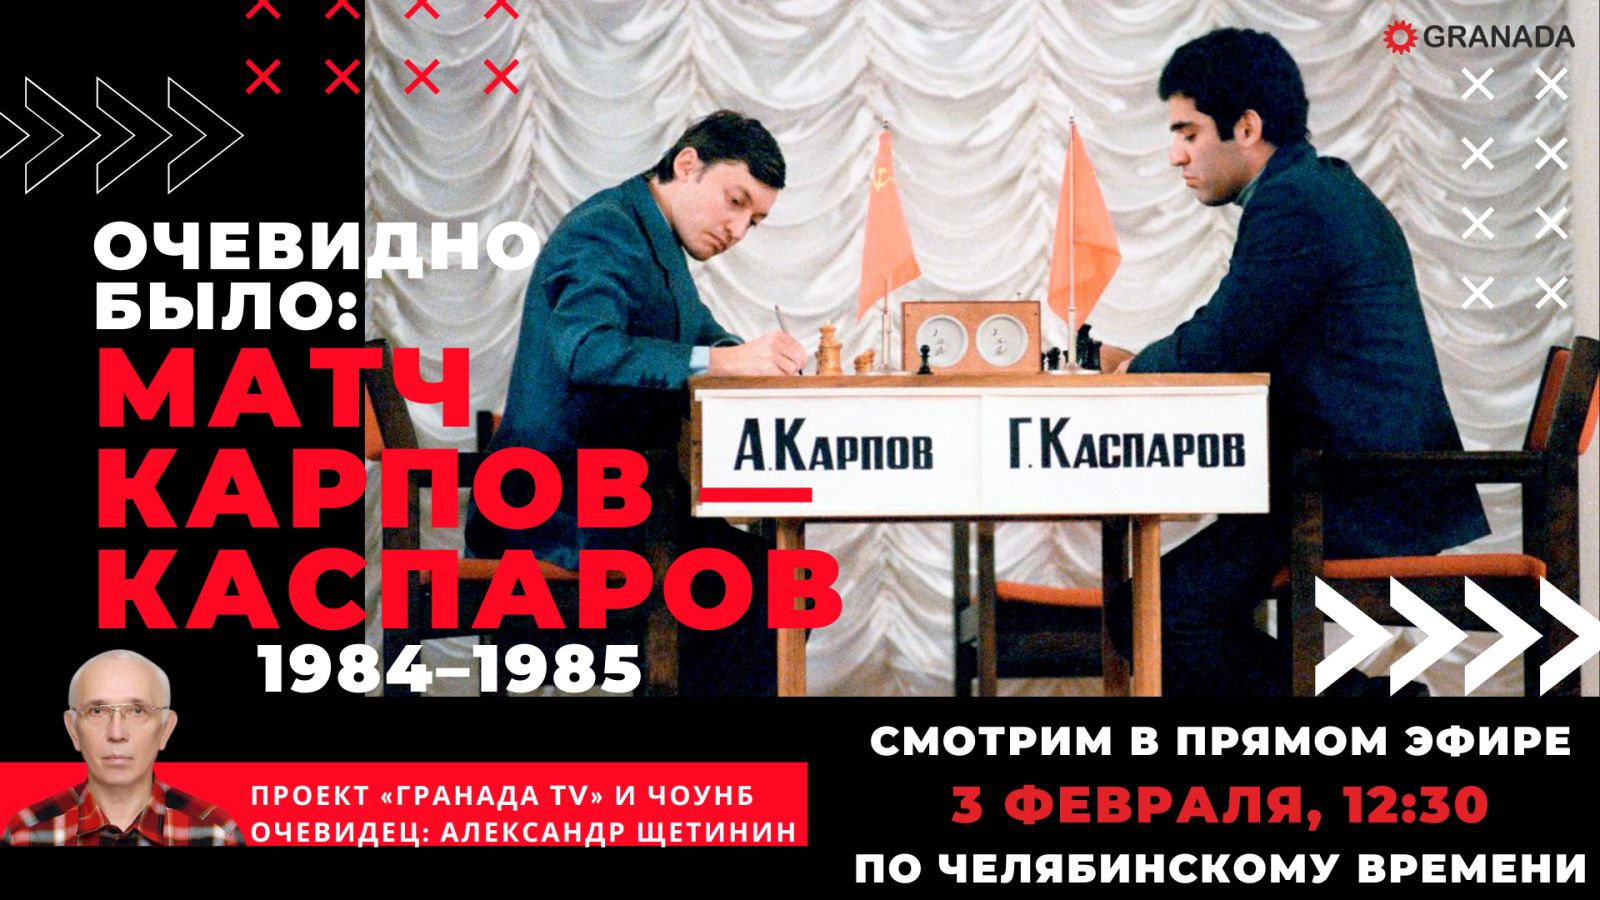 Вспоминаем легендарный шахматный поединок между Карповым и Каспаровым